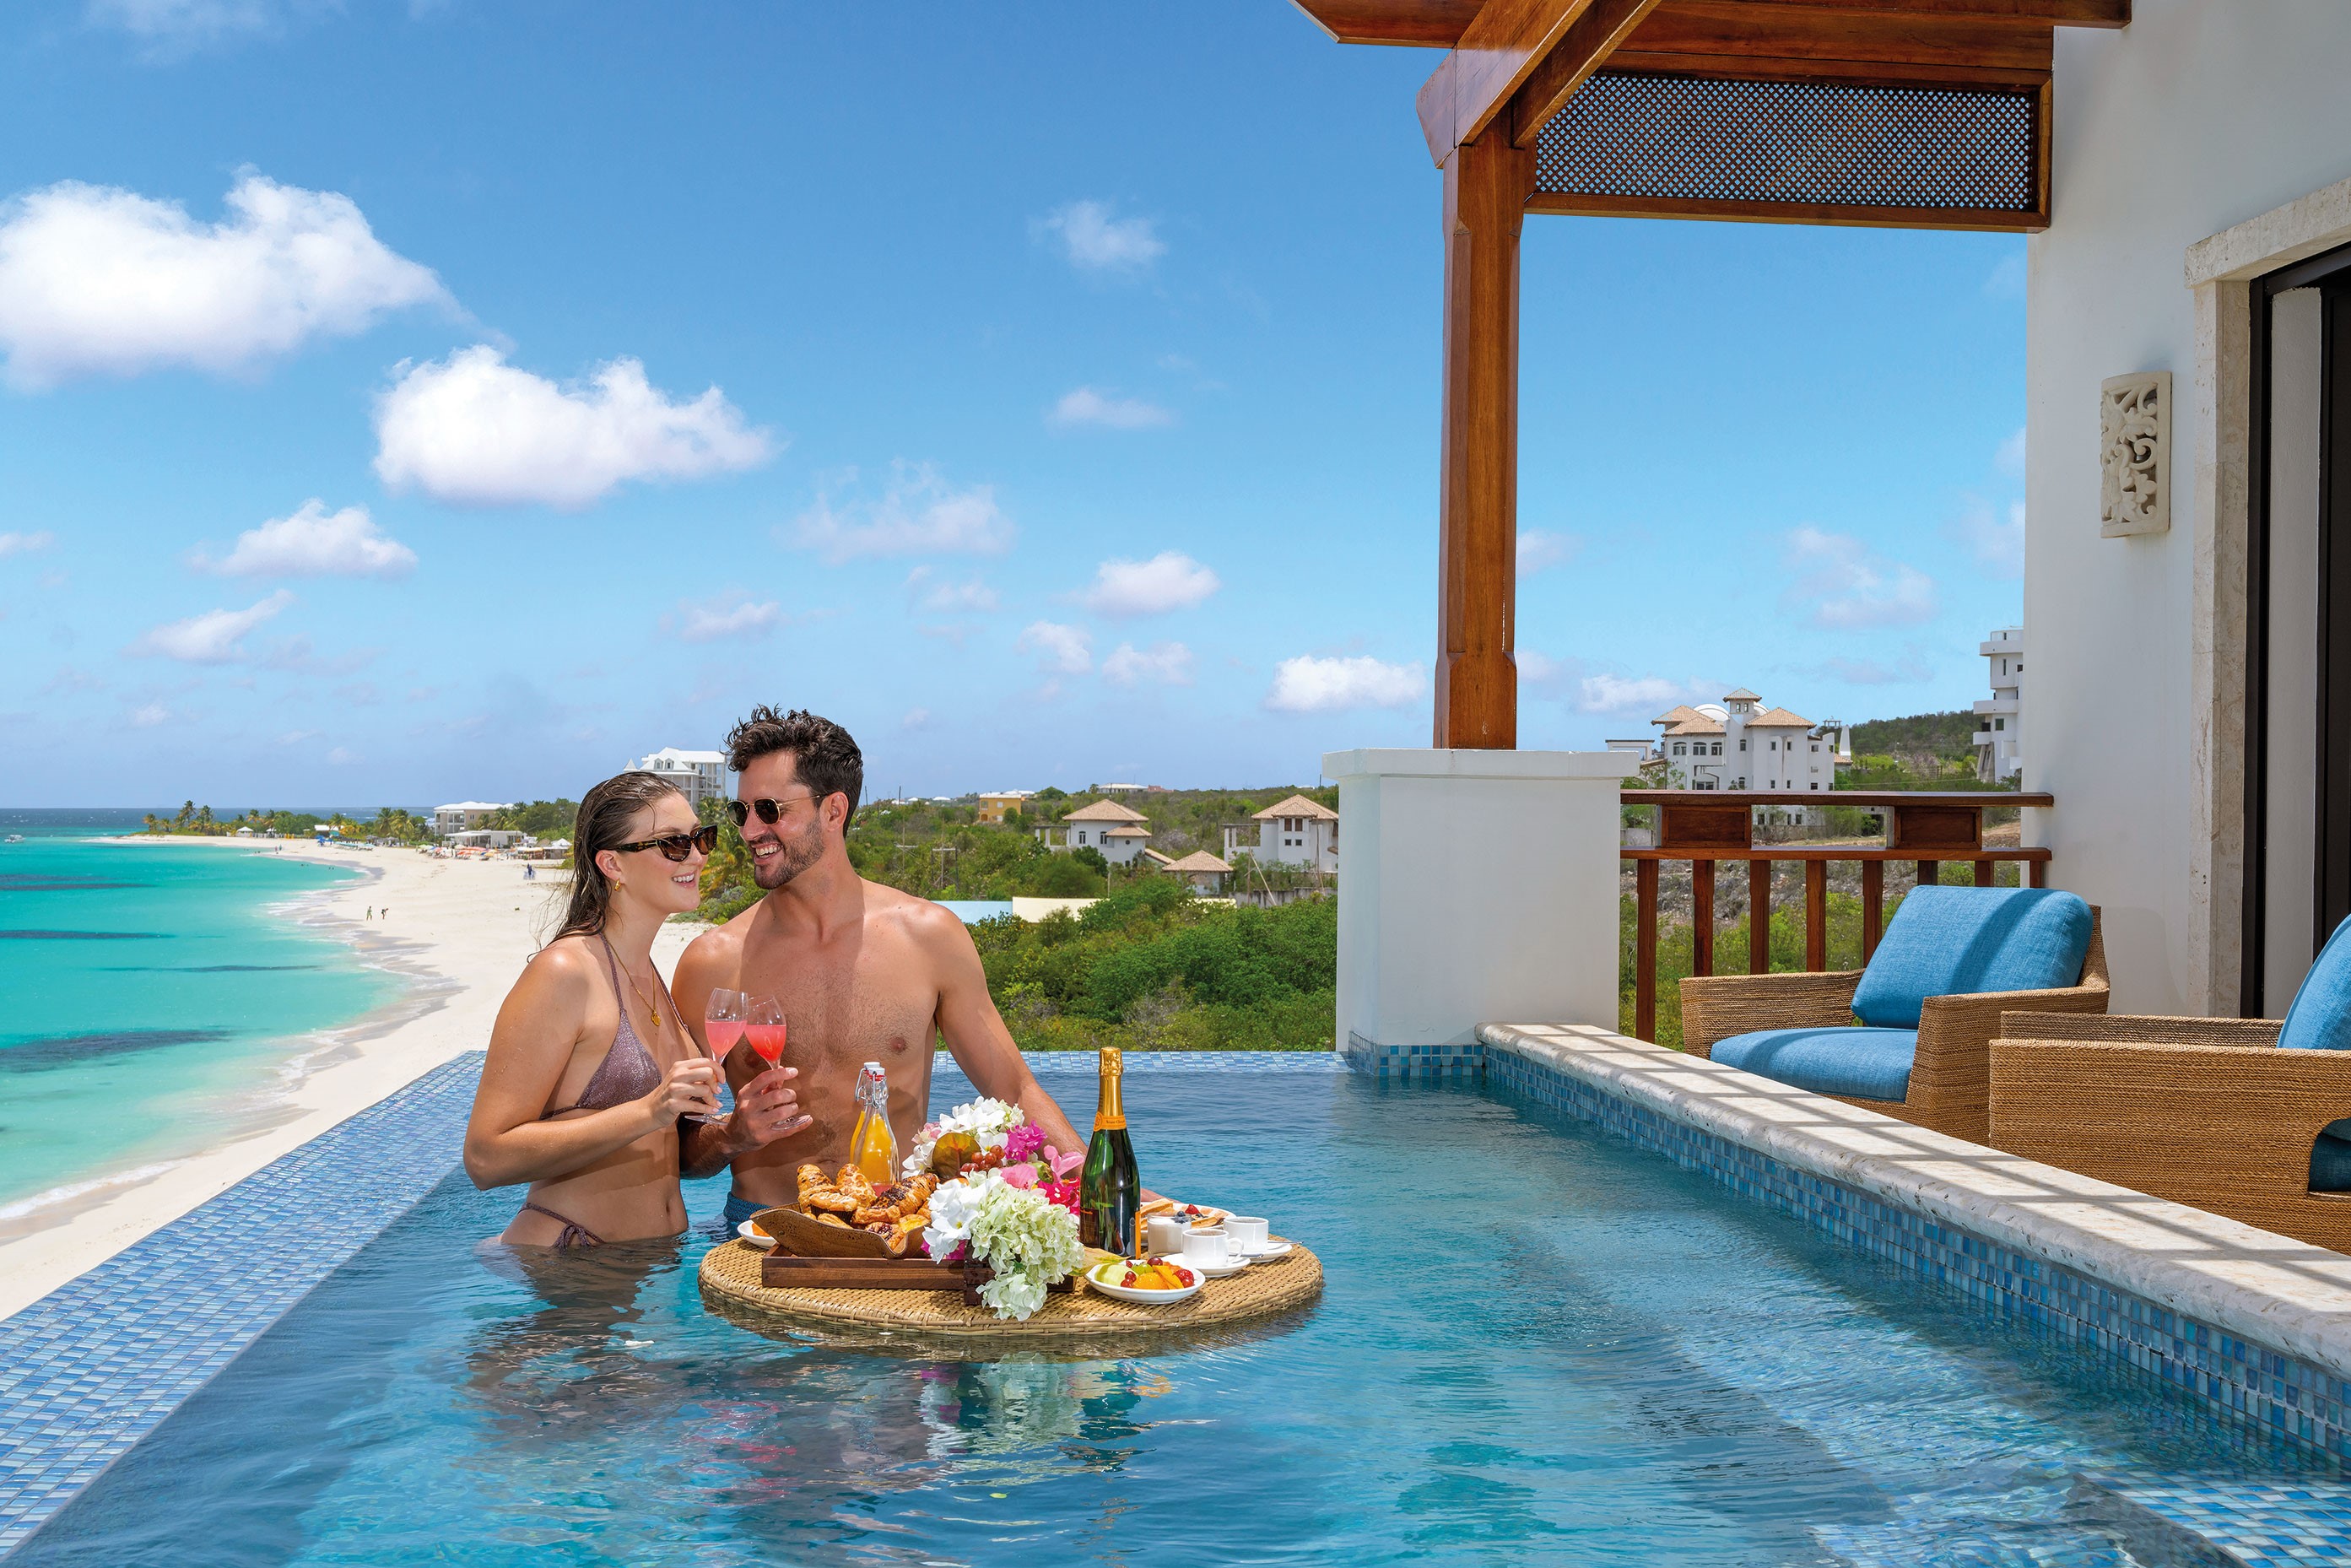 Homem e mulher sentados na piscina com champanhe e comida